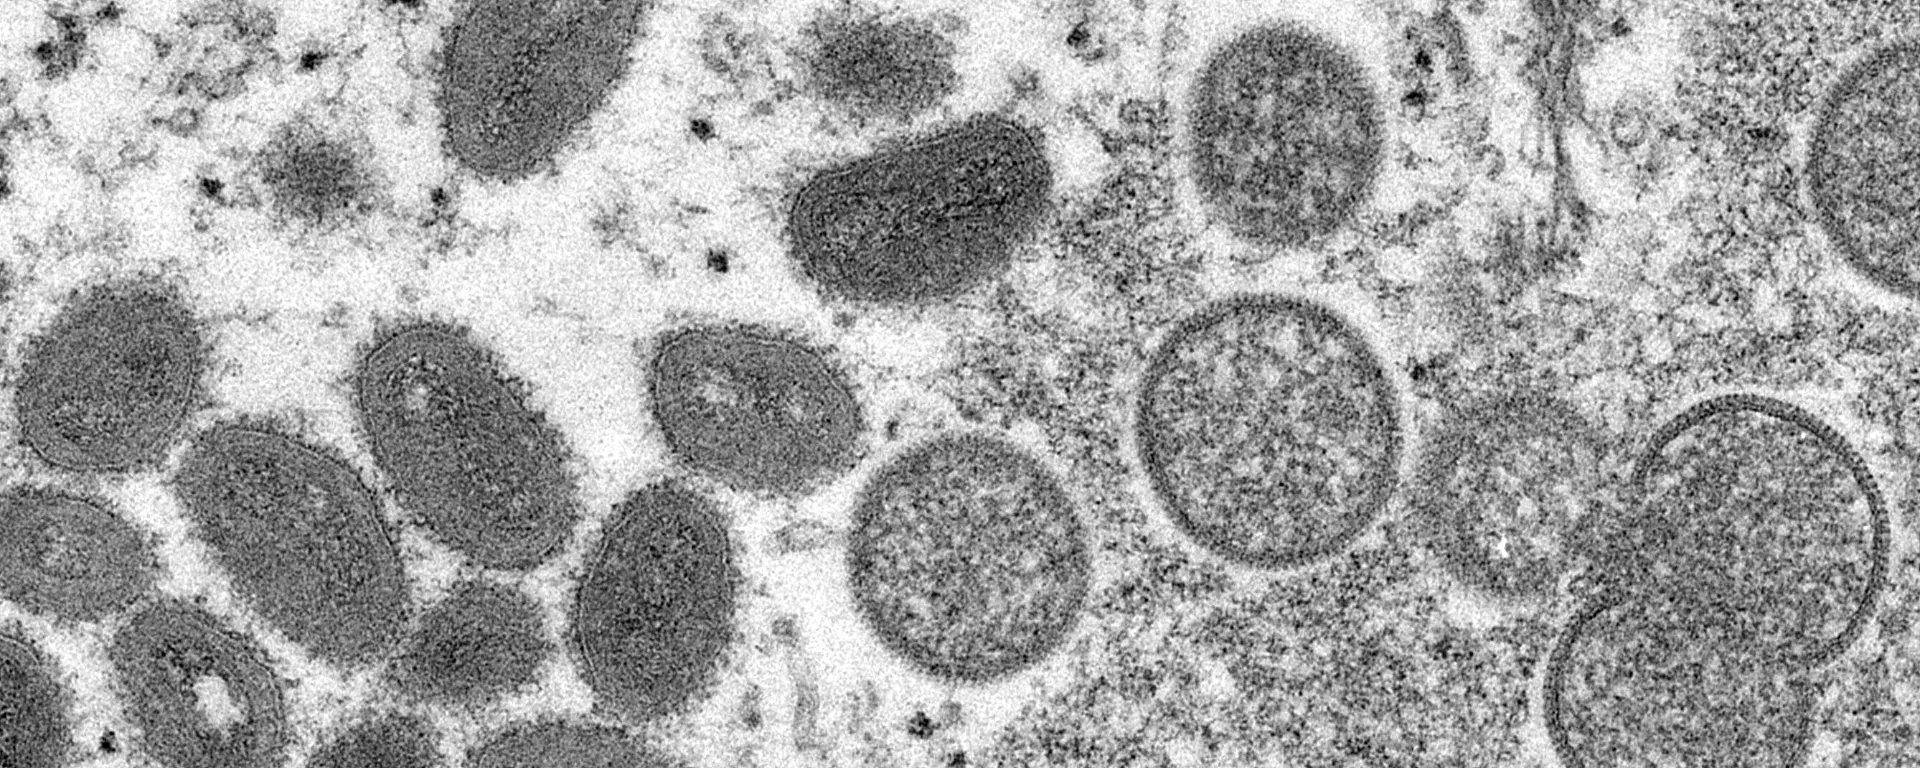 电子显微镜下的猴痘病毒。 资料图